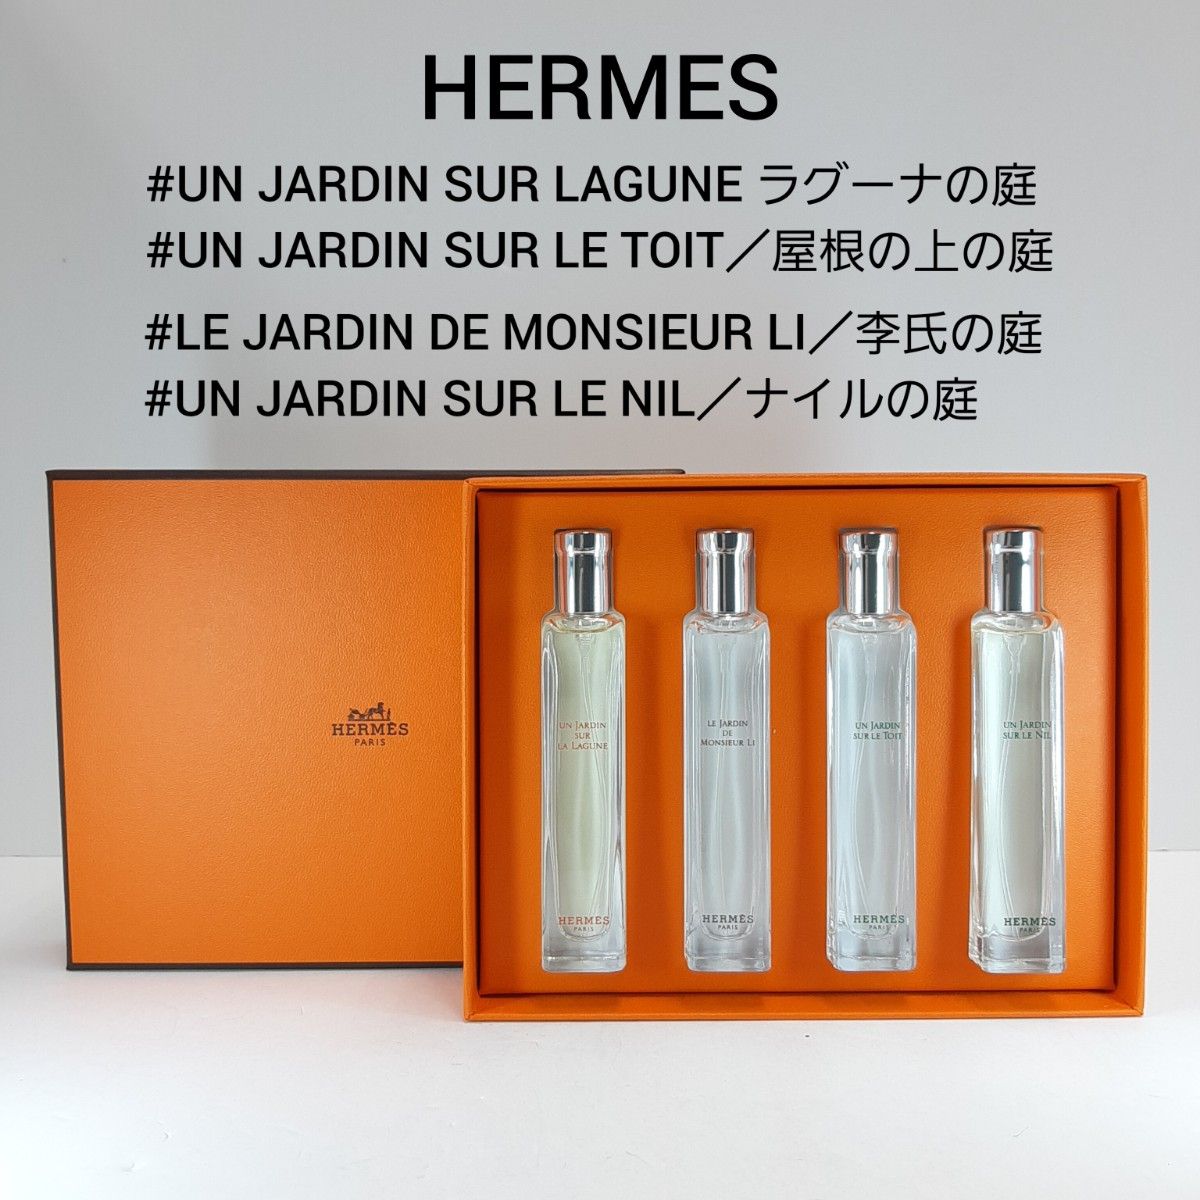 エルメス ガーデンコレクション 香水 4点 15ml 庭シリーズ HERMES